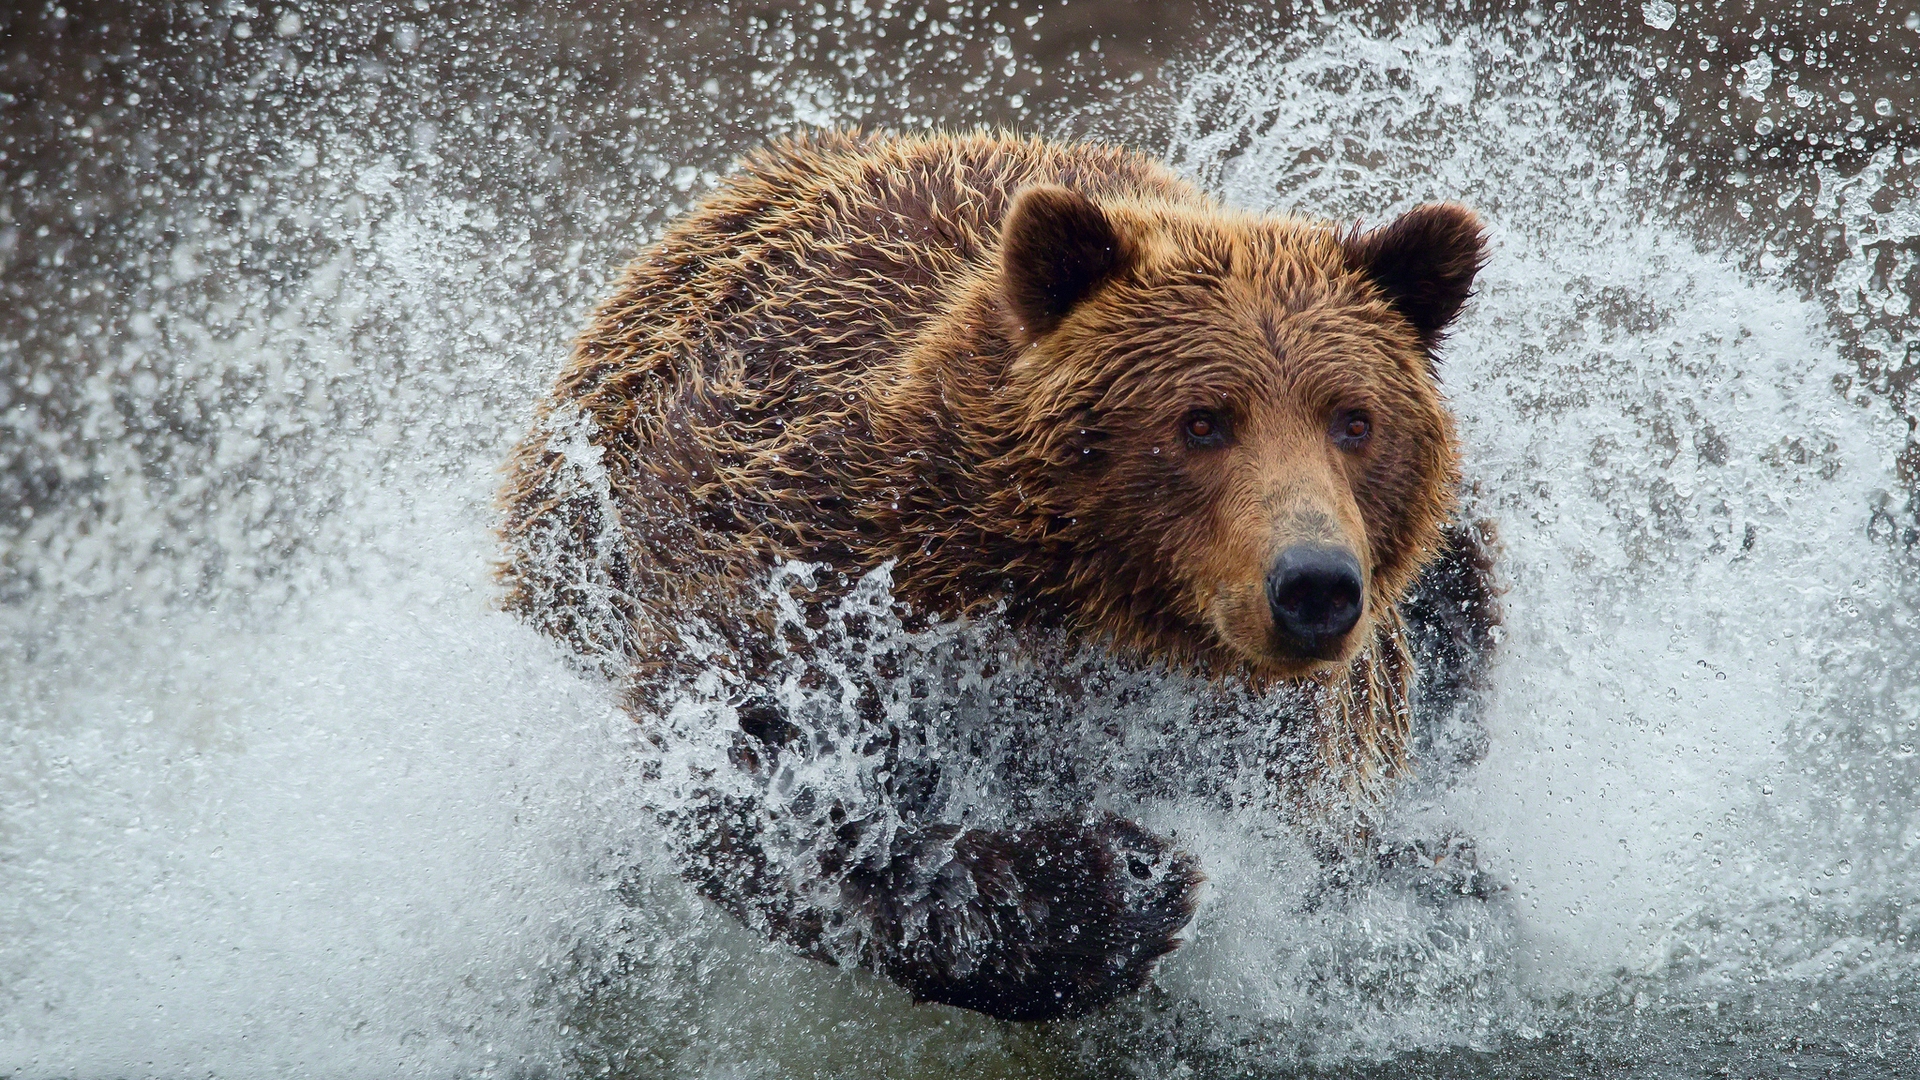 Bear Running Splash for 1920 x 1080 HDTV 1080p resolution